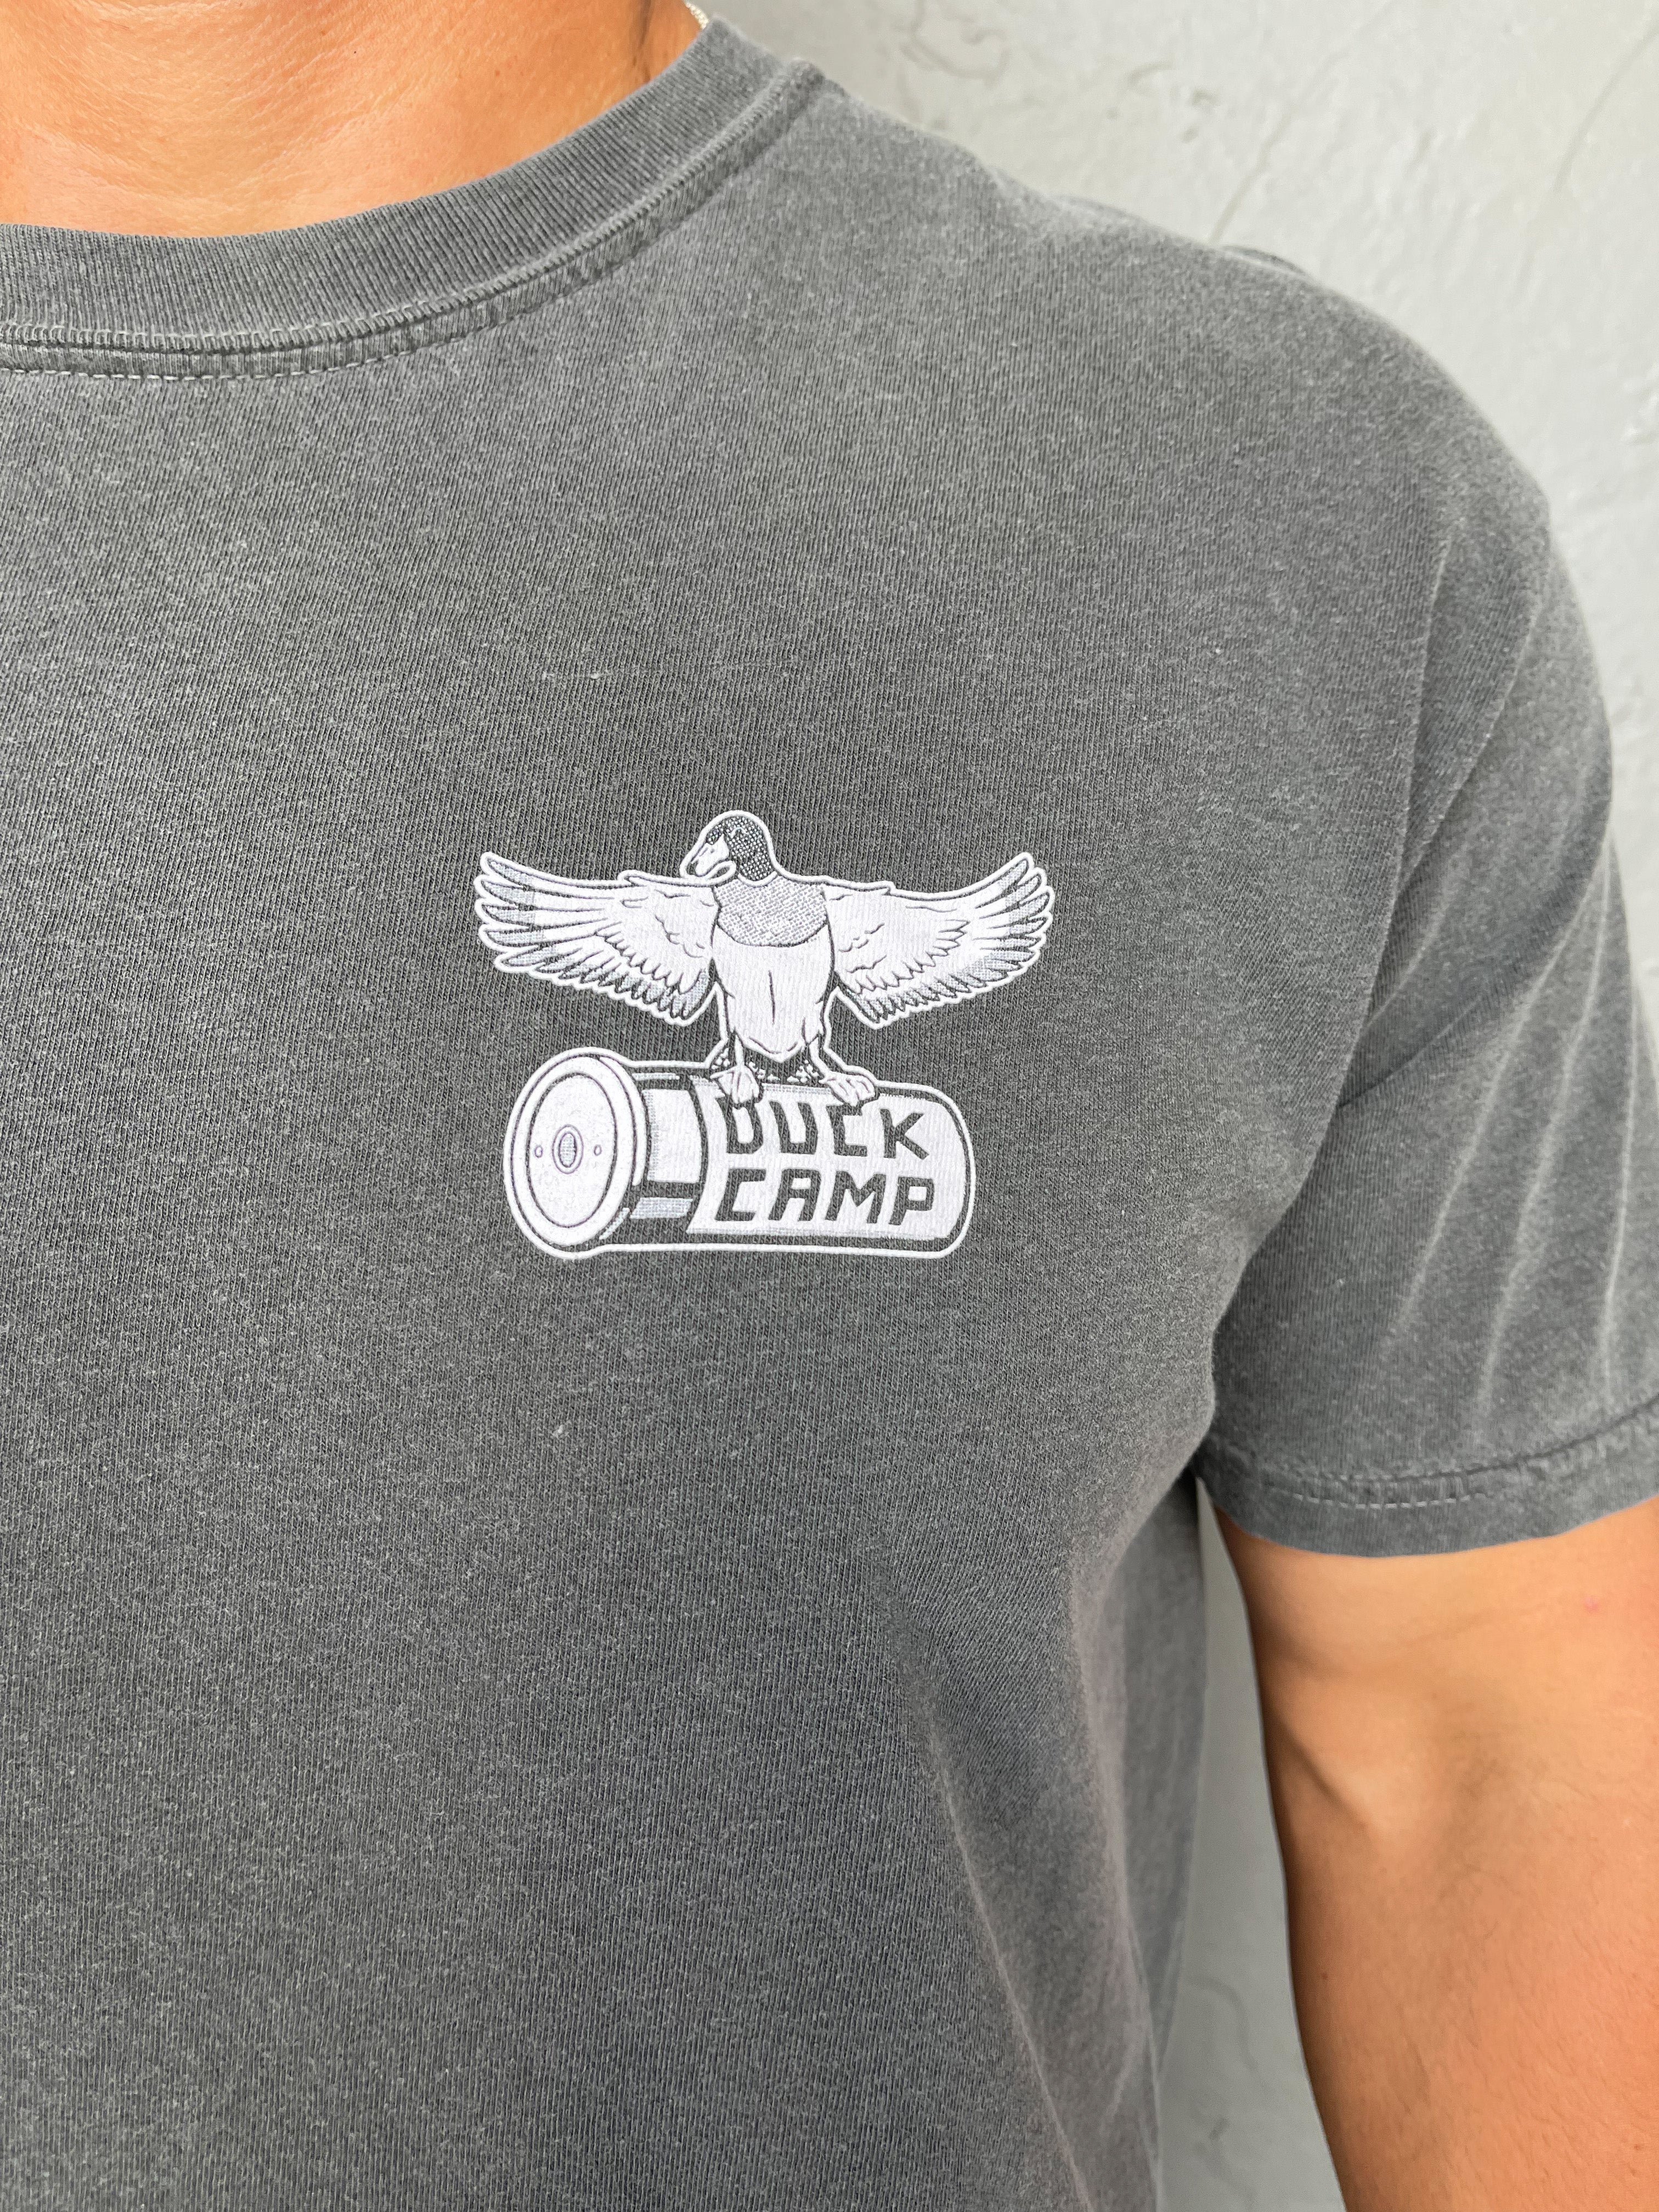 Liberty Duck T-Shirt - Pepper